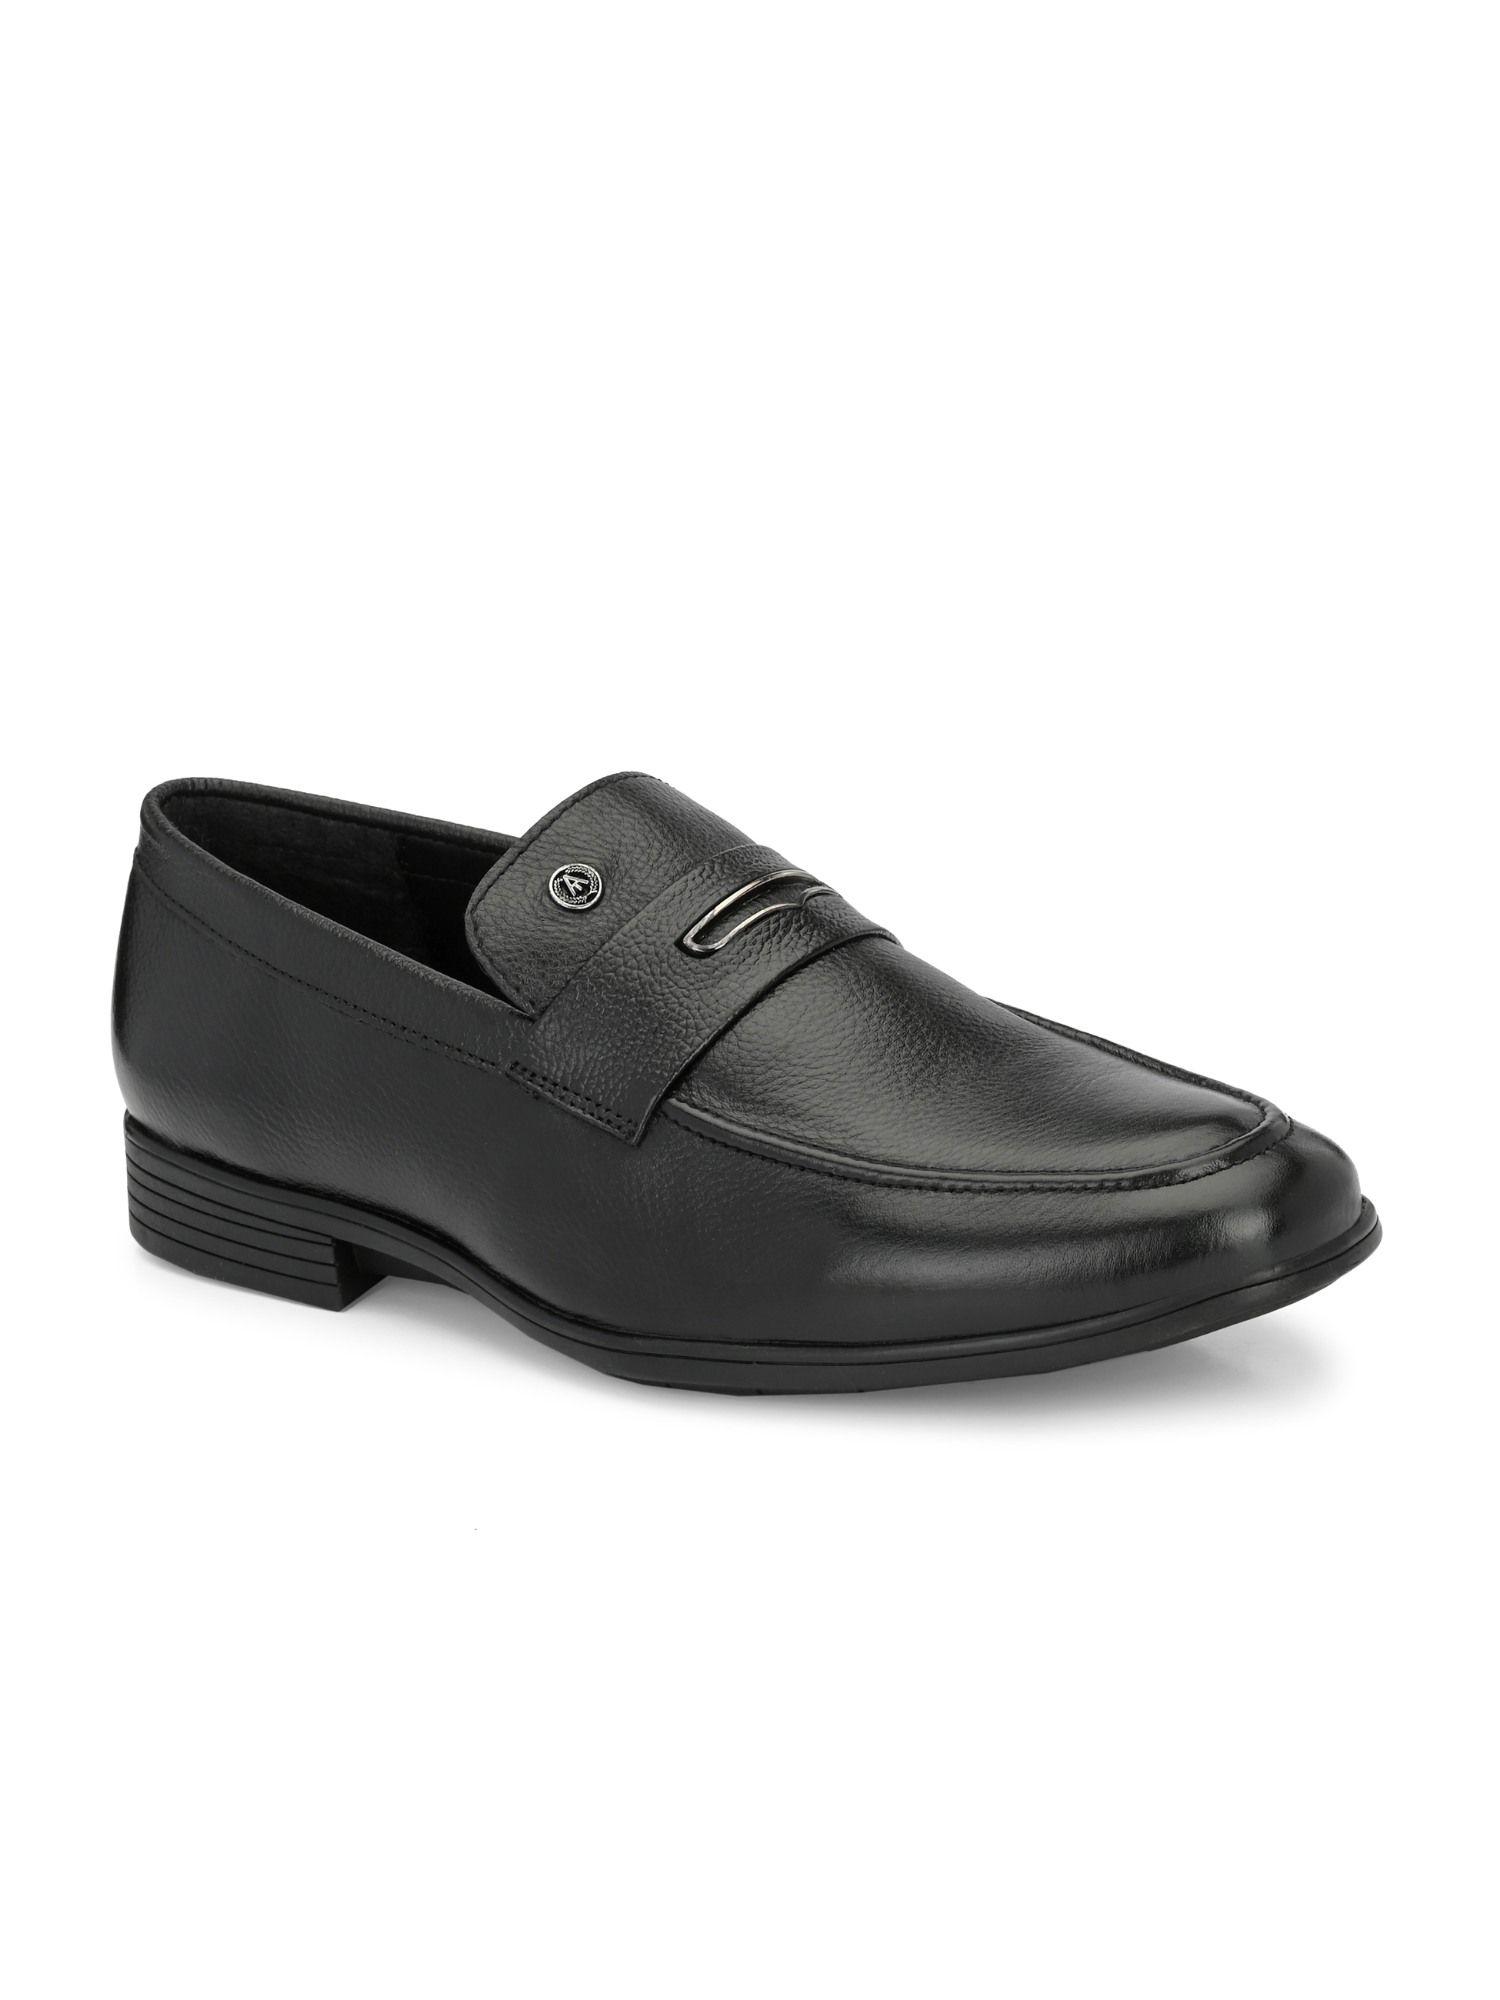 solid-genuine-leather-black-slip-on-formal-shoes-for-men